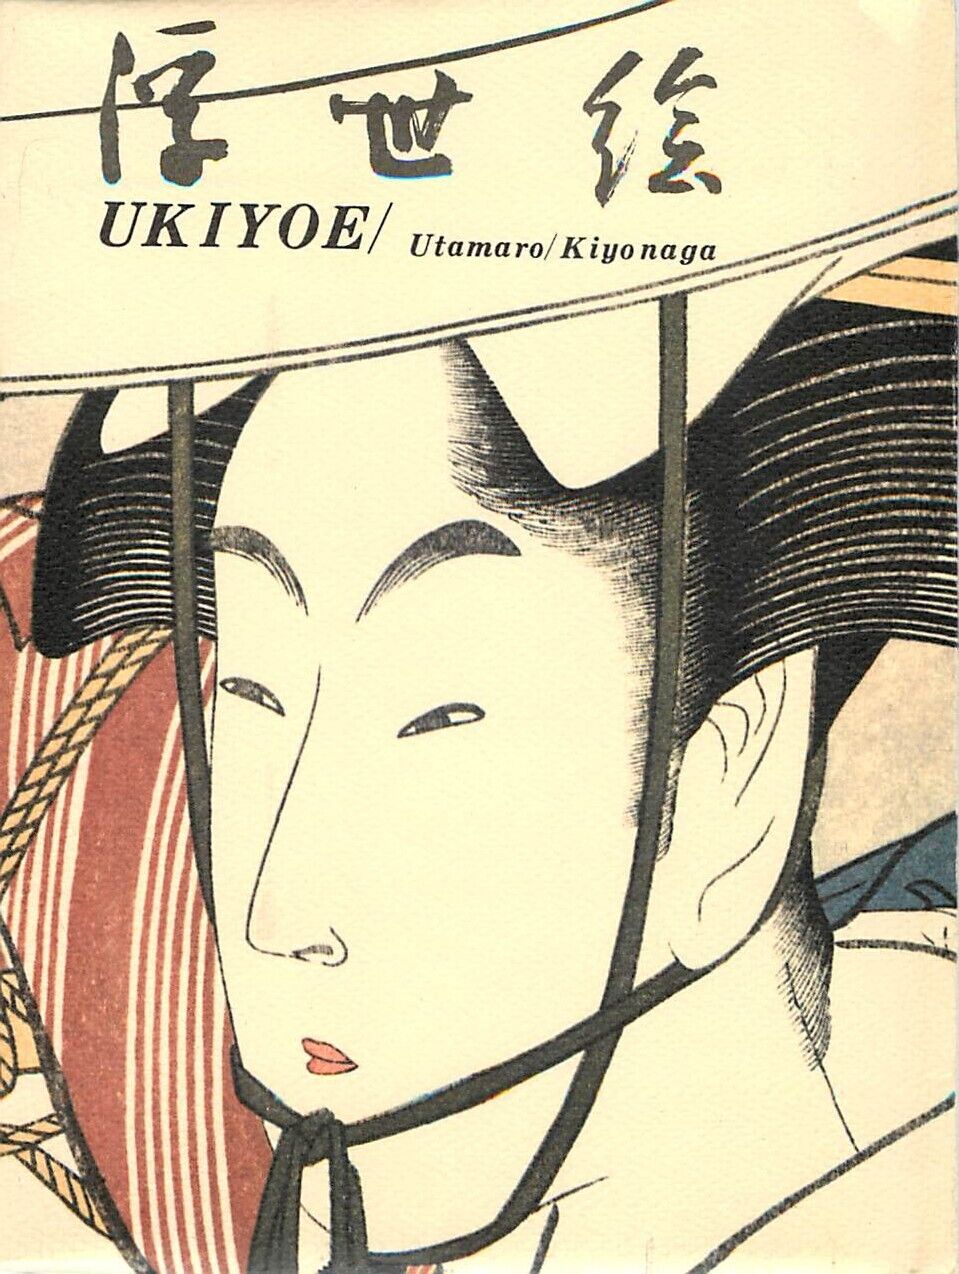 Set~5 Japanese Ukiyo-e Art Postcards; Utamaro Kiyonaga Beautiful Women & Folder